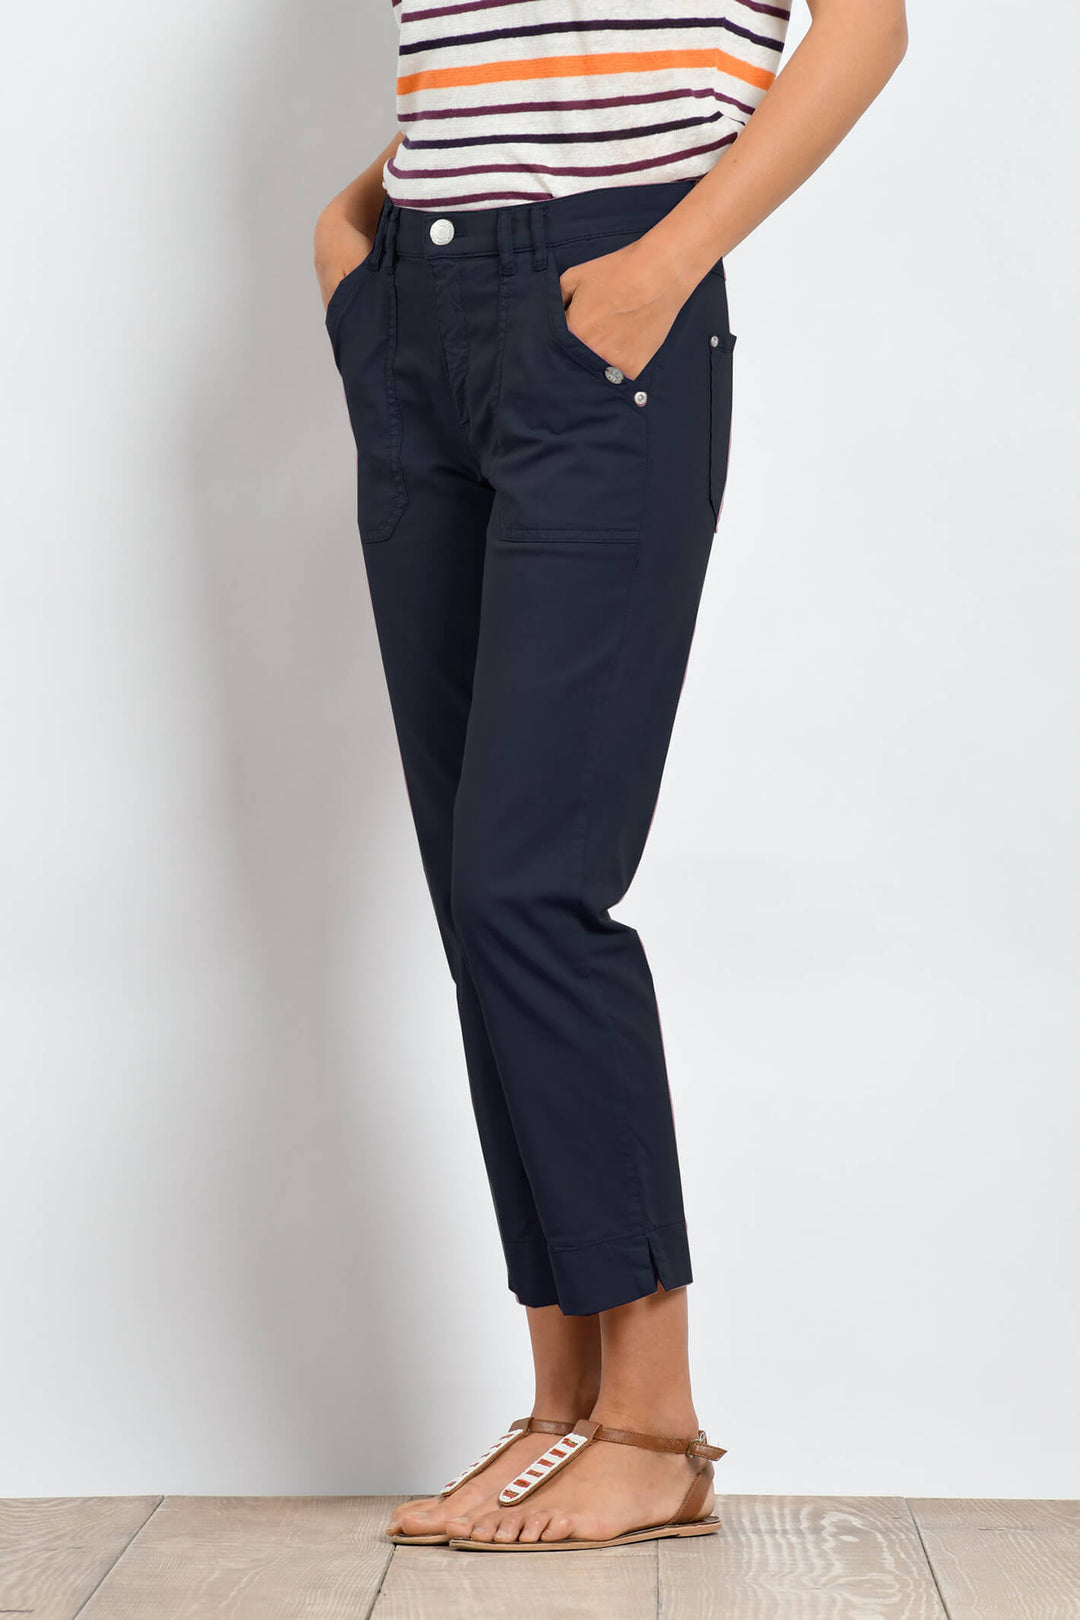 Mat De Misaine Pimorico 34726 Navy Trousers - Shirley Allum Boutique